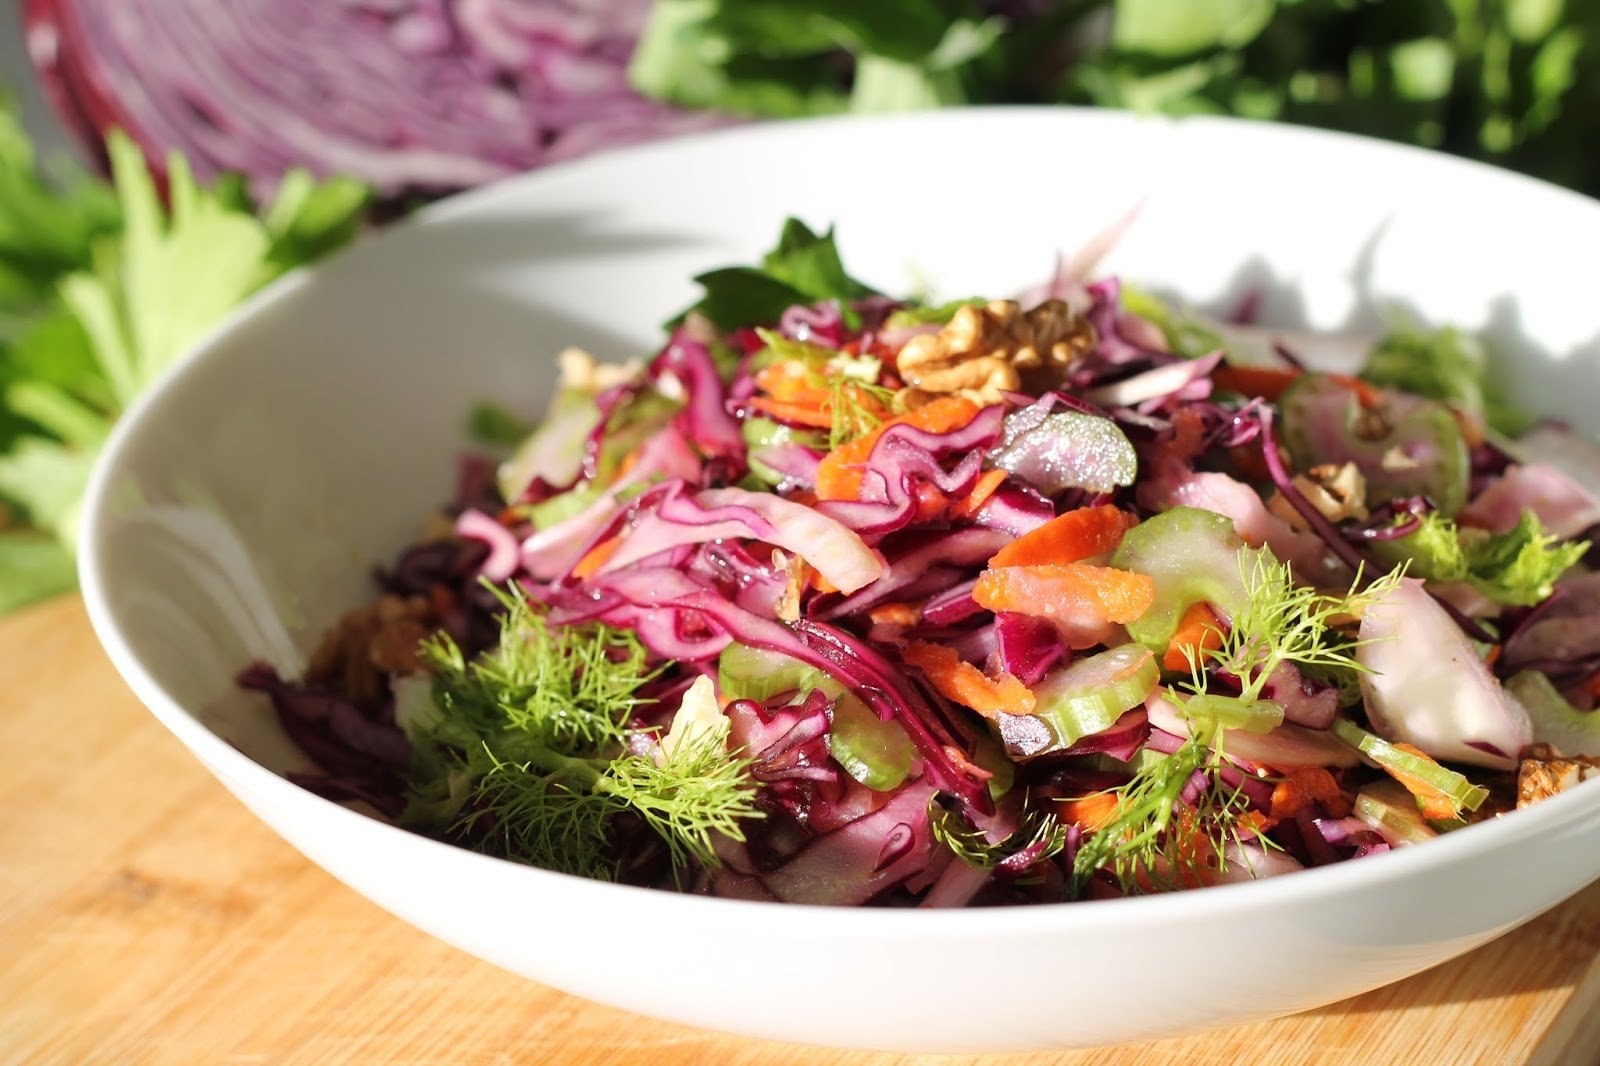 Салат из капусты краснокочанной свежей вкусный рецепт